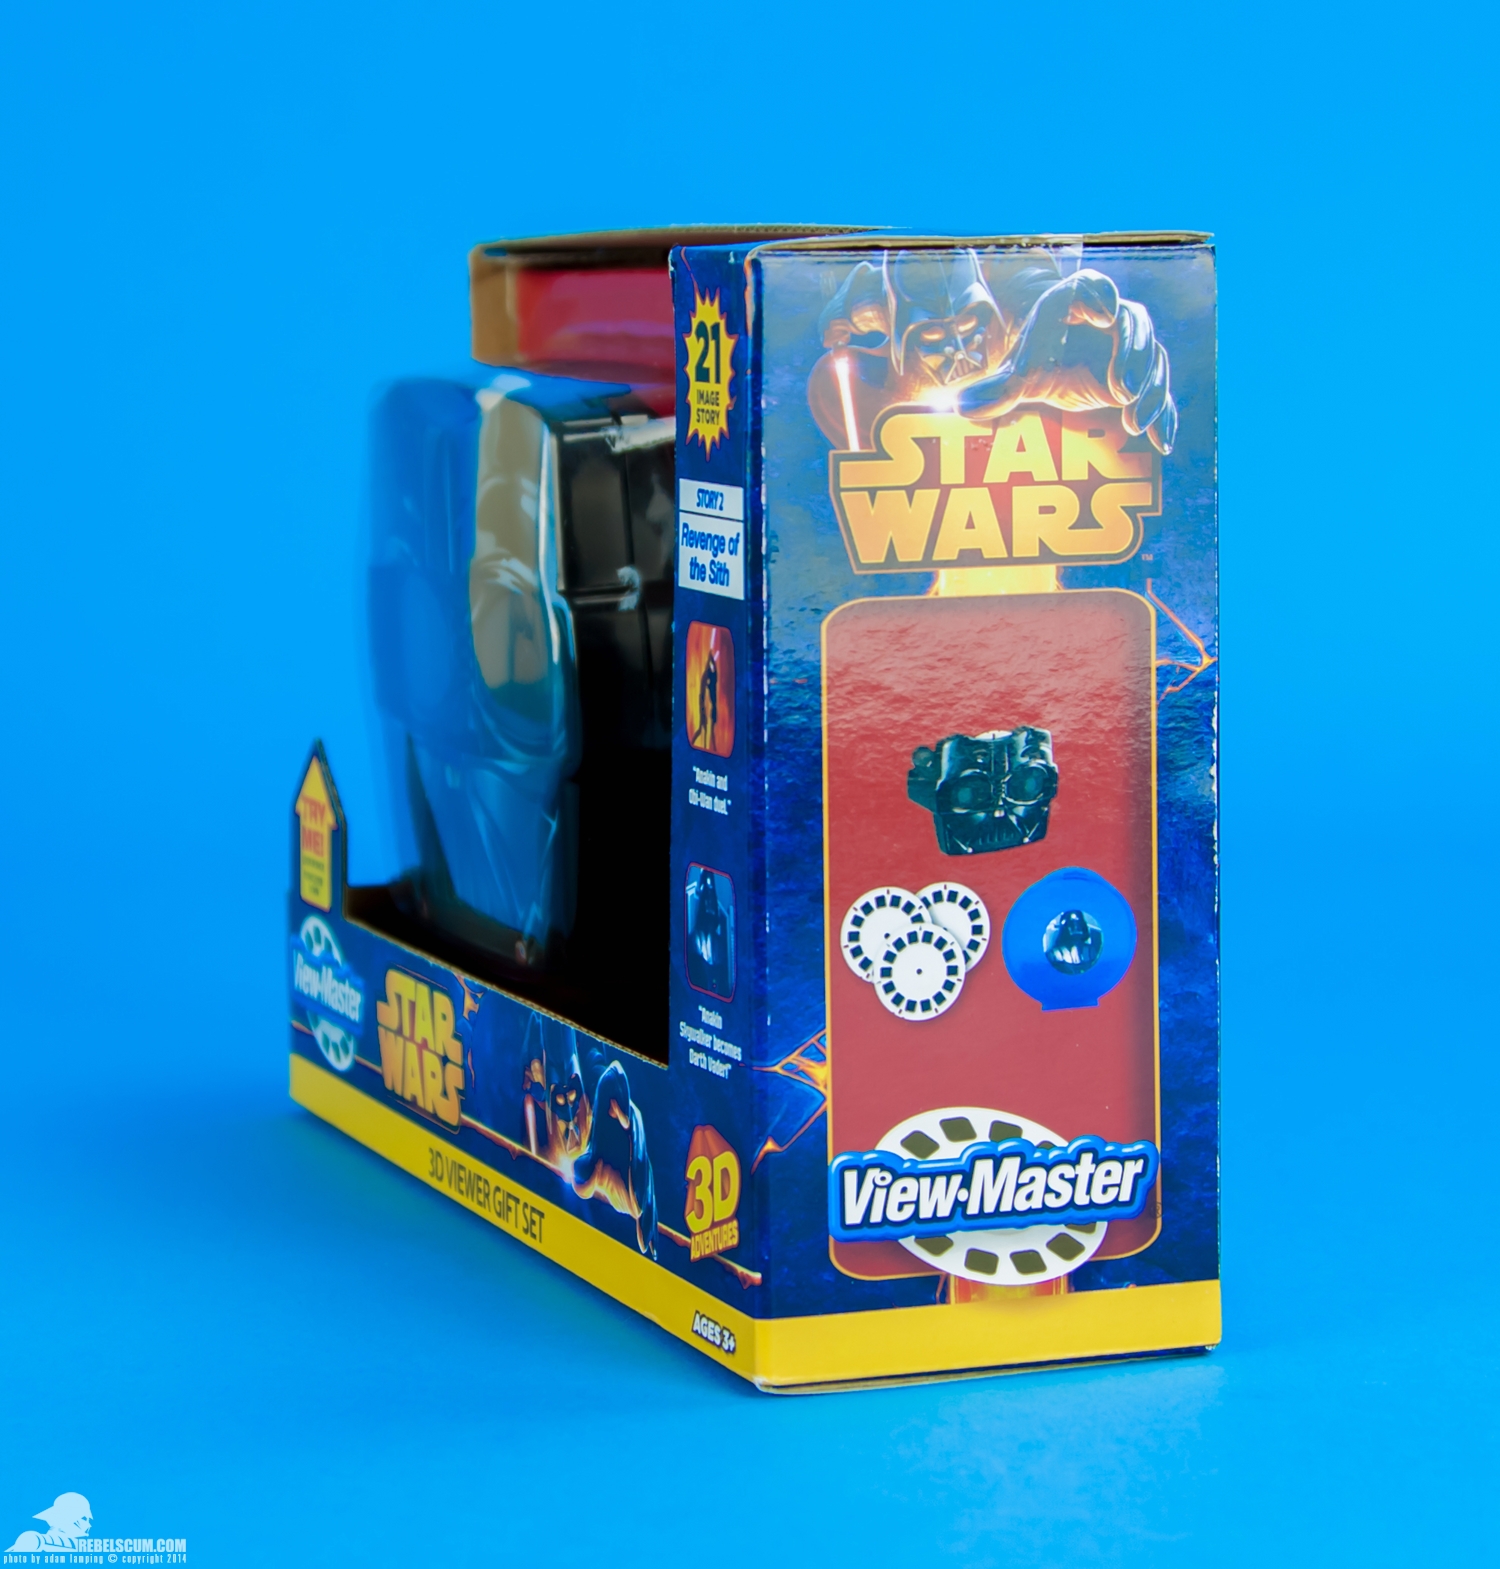 View-Master-Star-Wars-Darth-Vader-3D-Viewer-Gift-Set-015.jpg